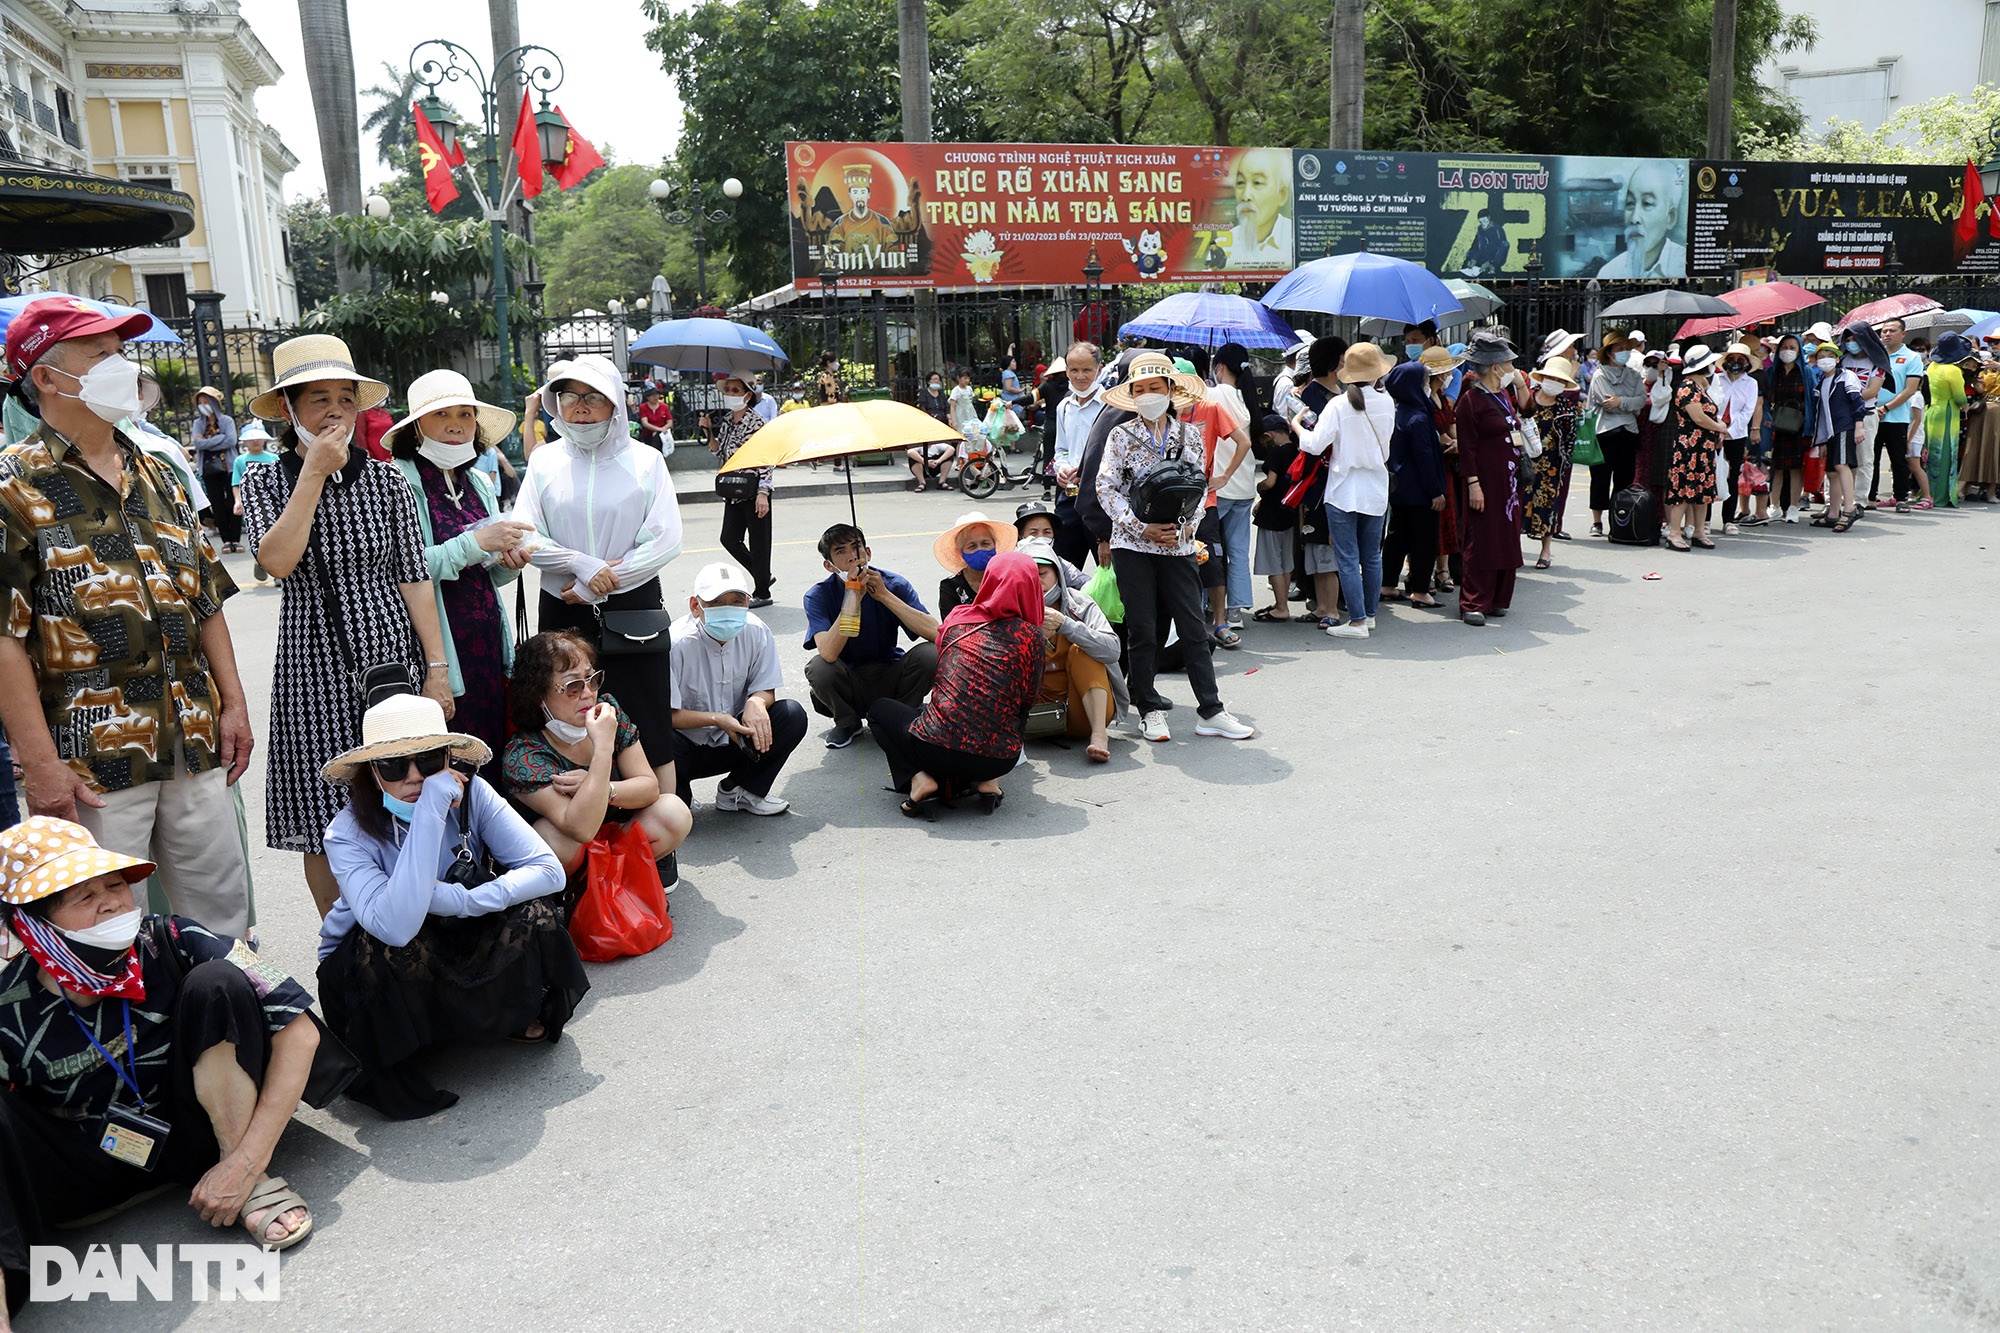 Hà Nội: Nhà tù Hỏa Lò đông nghịt, hàng quán kín chỗ, buýt 2 tầng vỡ trận - 9